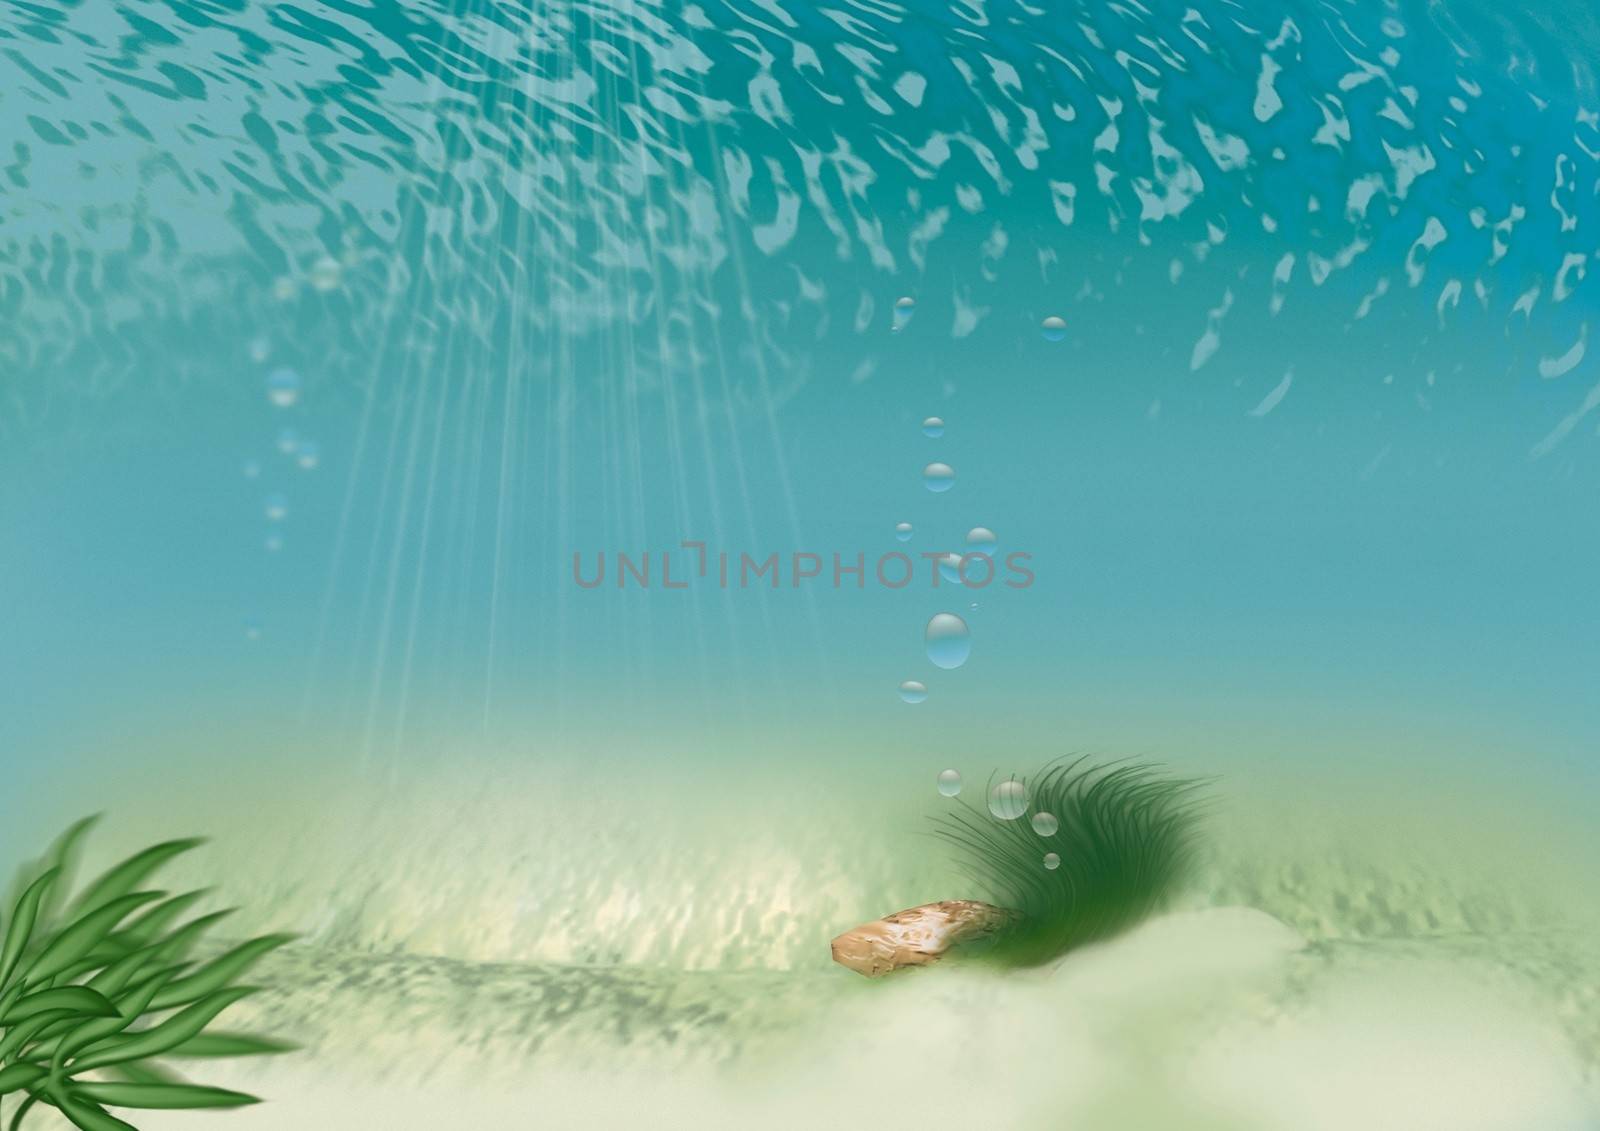 Underwater - Background Illustration